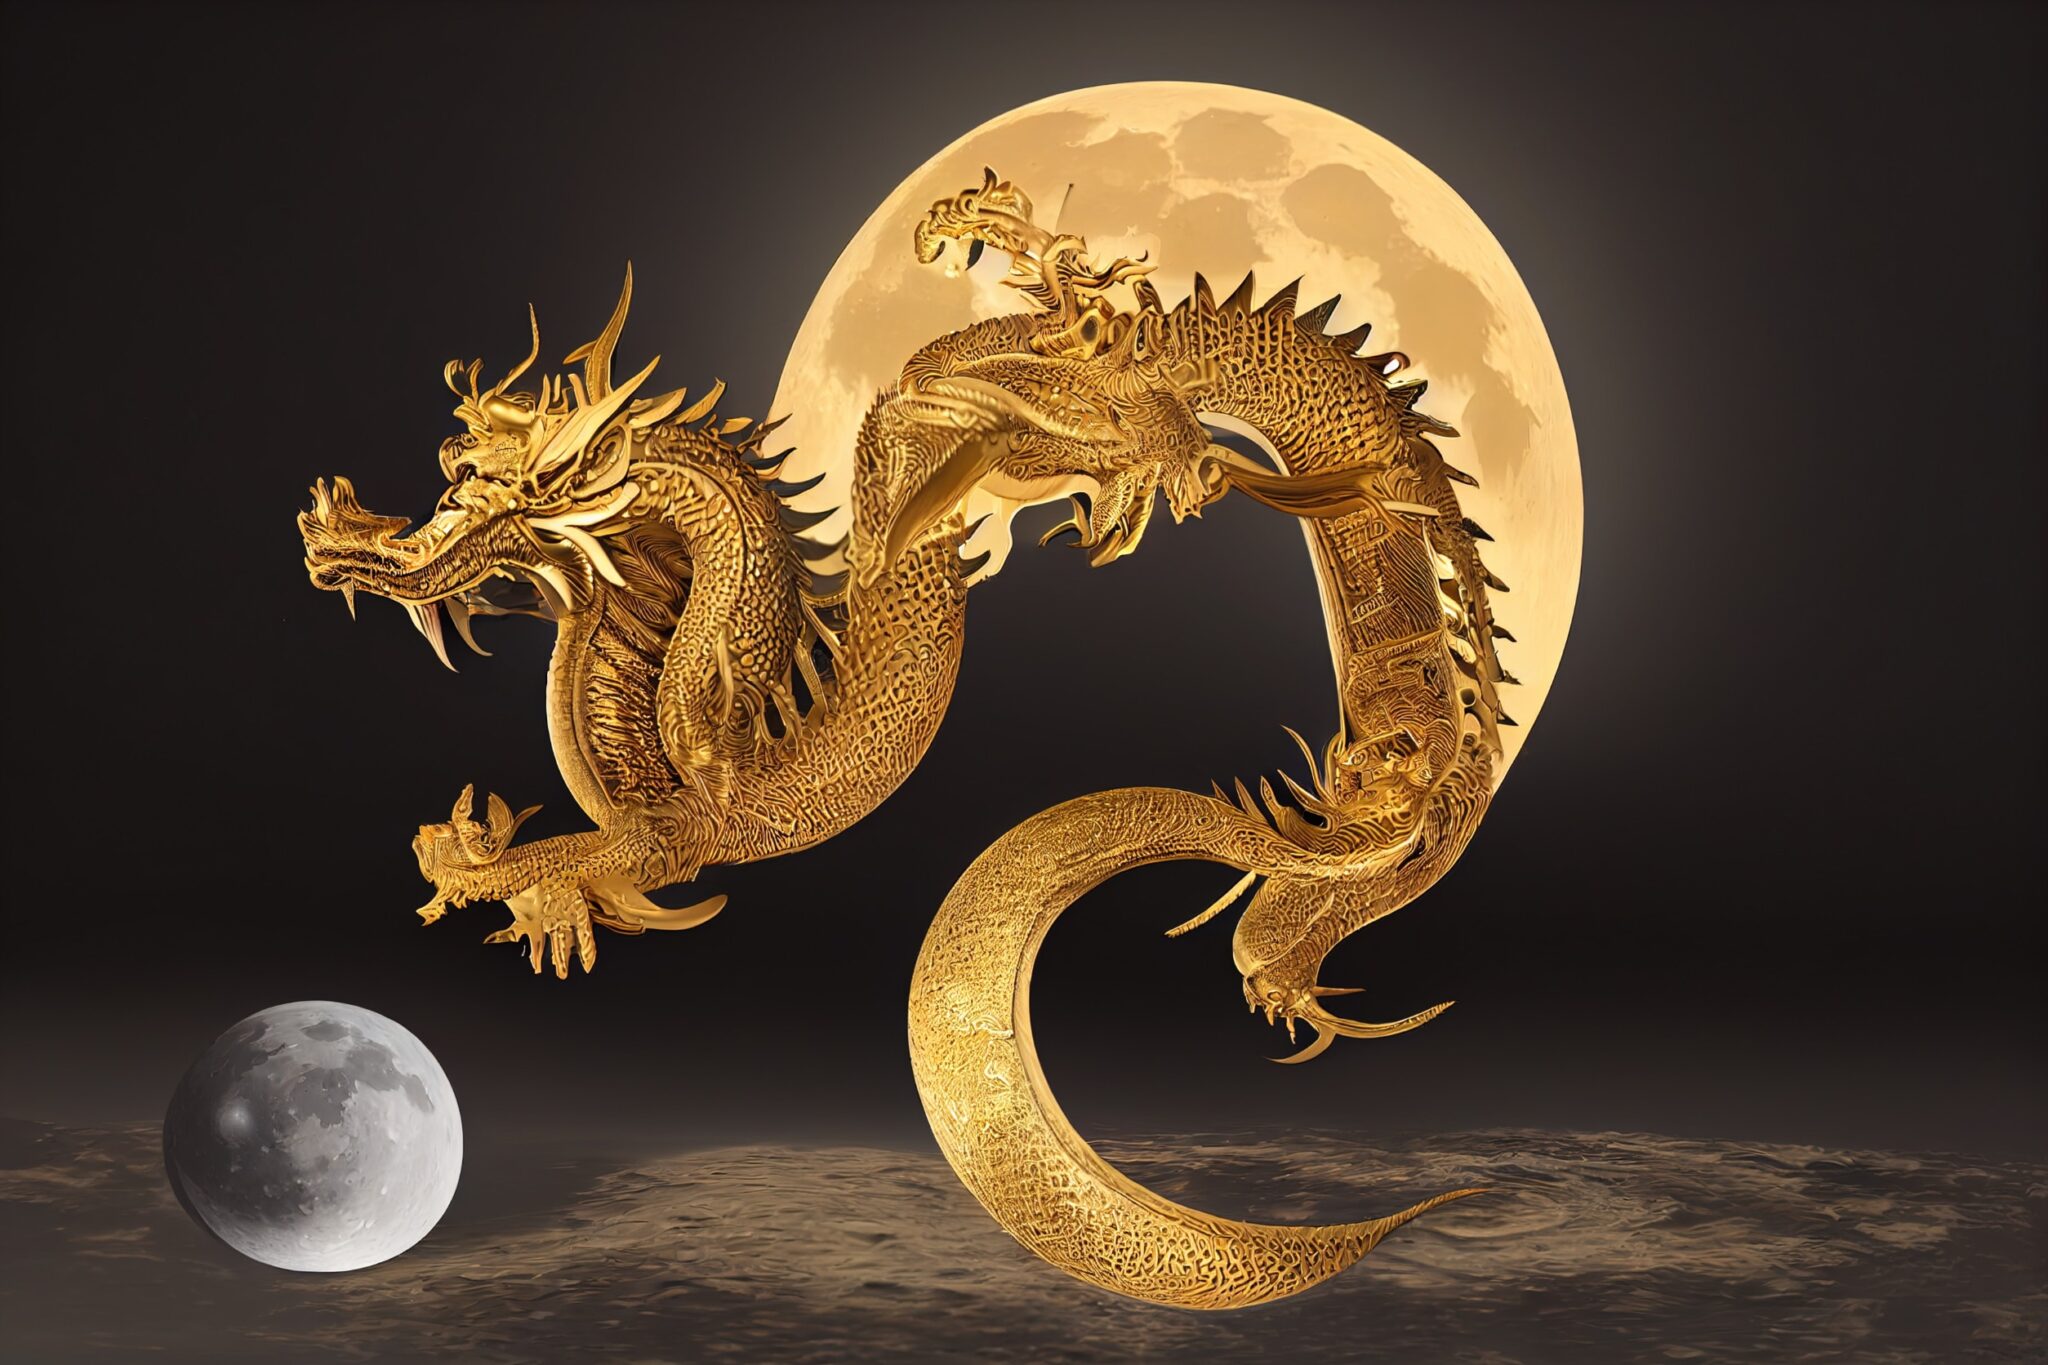 China Cloning Dragons -Fact check